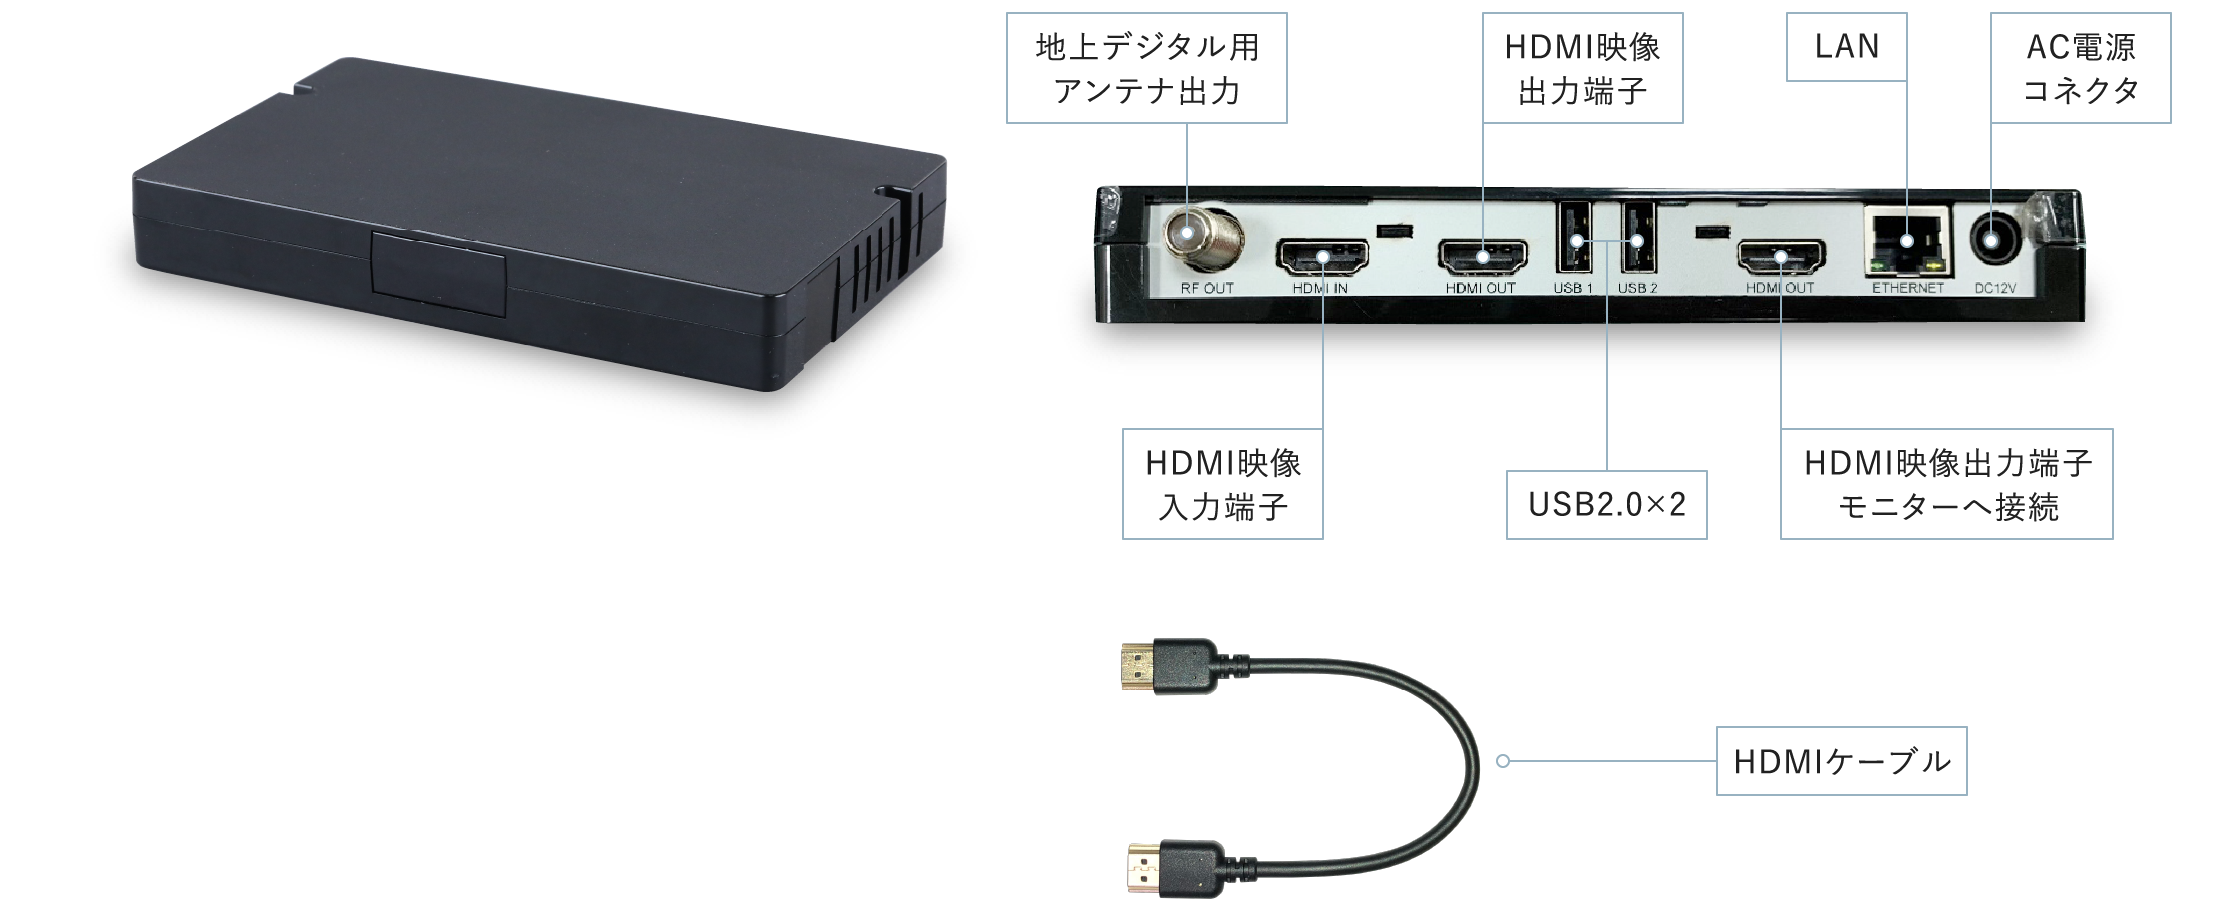 製品各部名称、地上デジタル用アンテナ出力、HDMI映像出力端子、LAN、AC電源コネクタ、HDMI映像入力端子、USB2つ、HDMI映像出力端子モニターへ接続